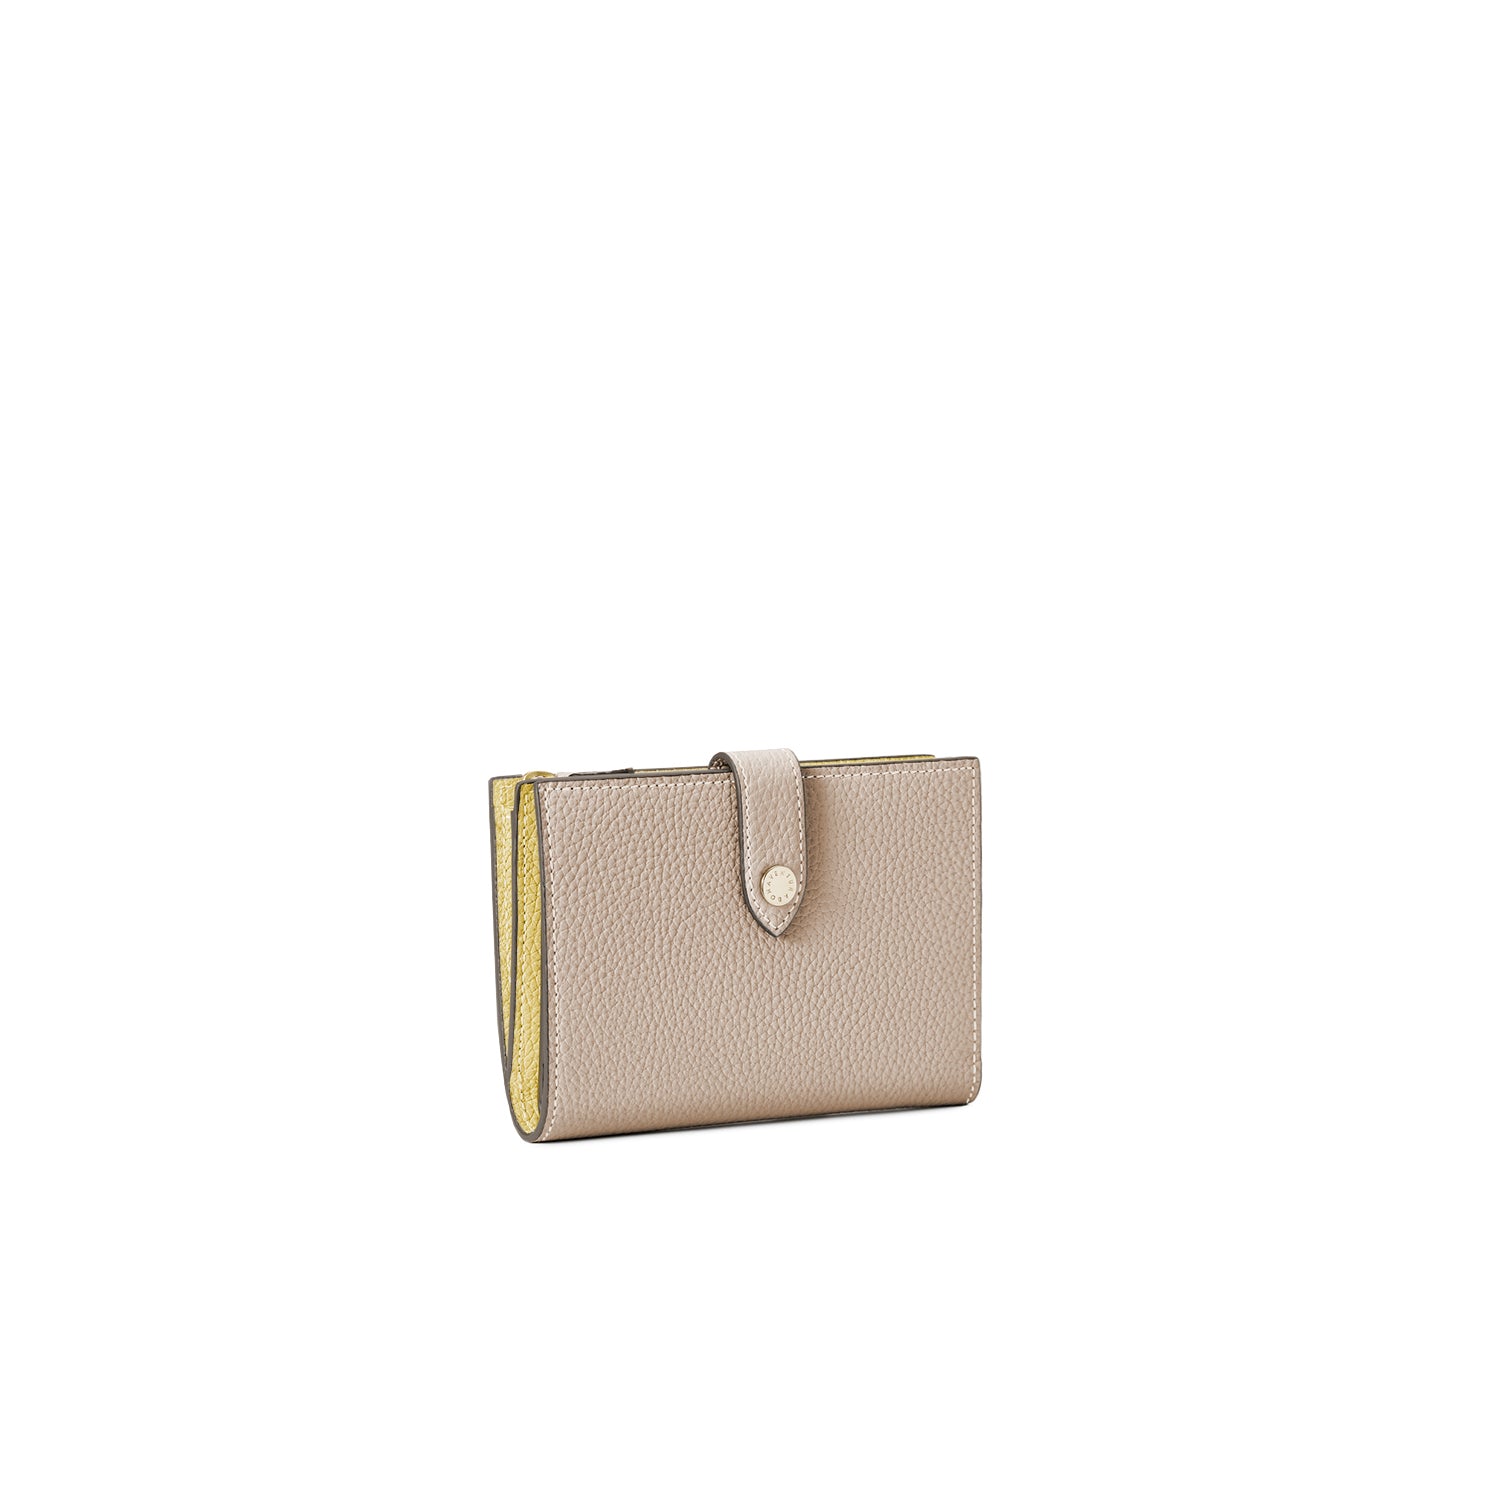 上質なレザーのレディース財布 – イタリア(ミラノ)発の高級革製品の 